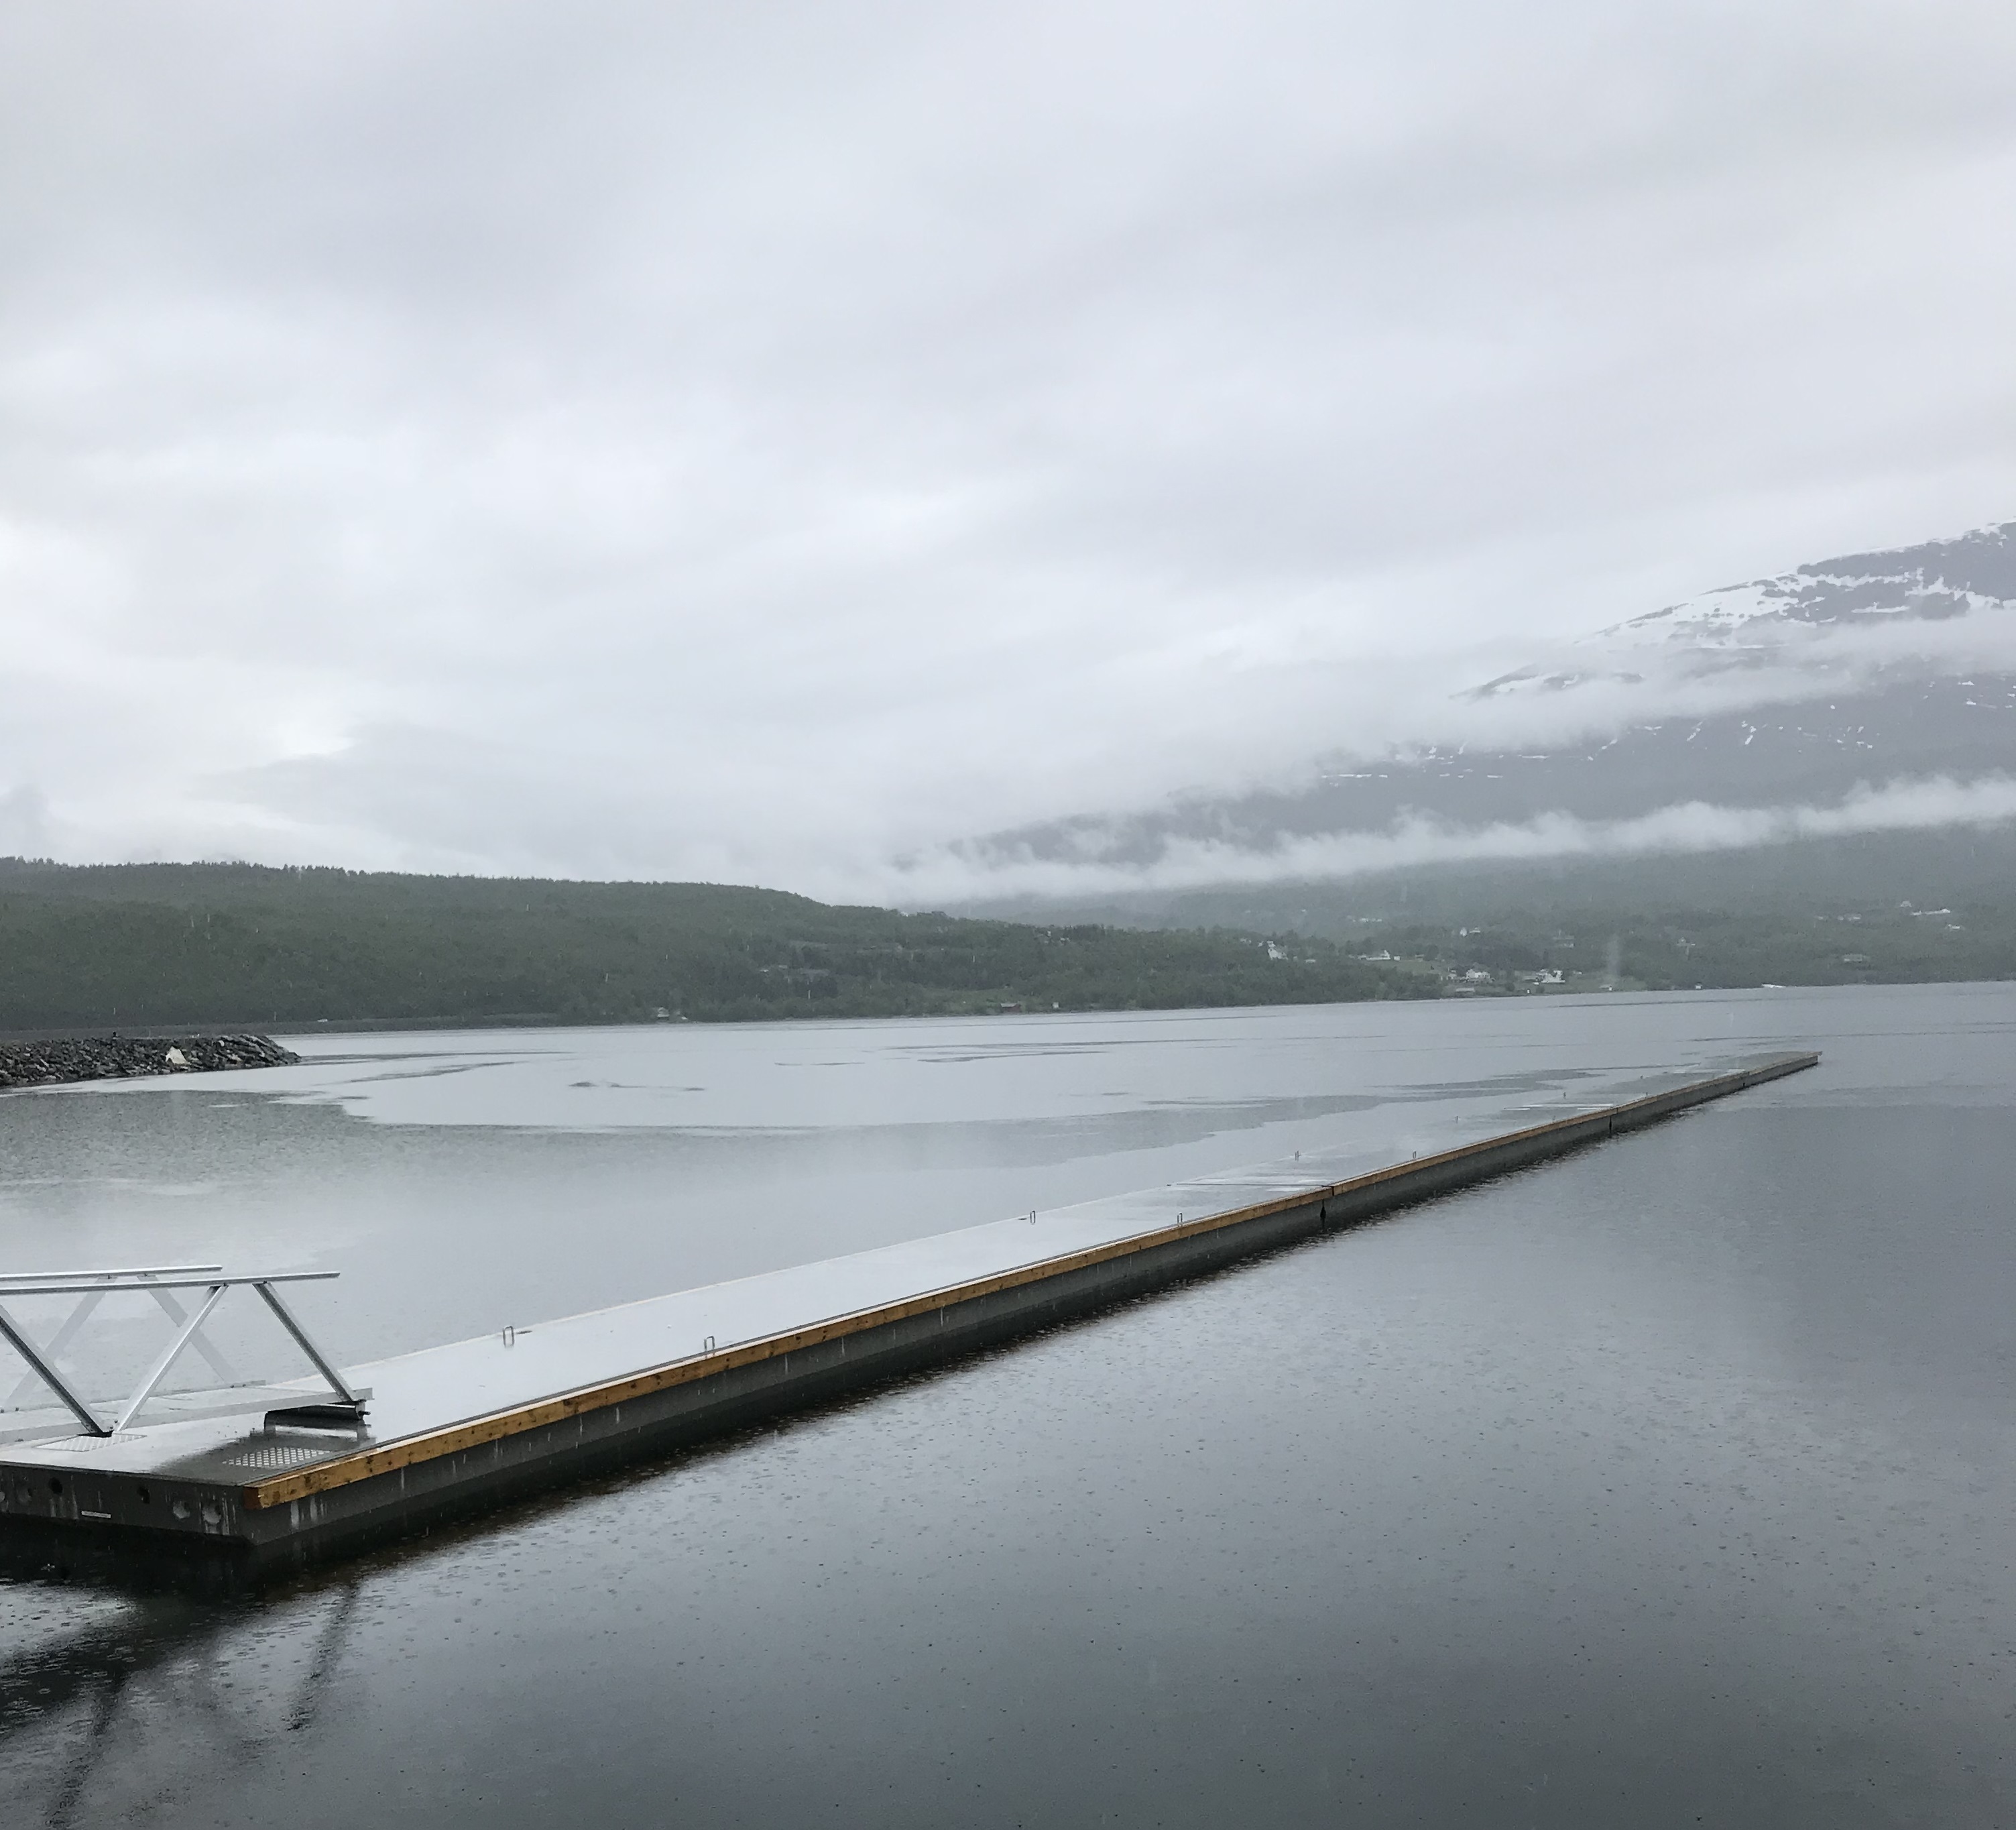 https://marinasolutions.no/uploads/Millionfisken-Sjøvegan-Troms-Marina-Solutions-3.jpg